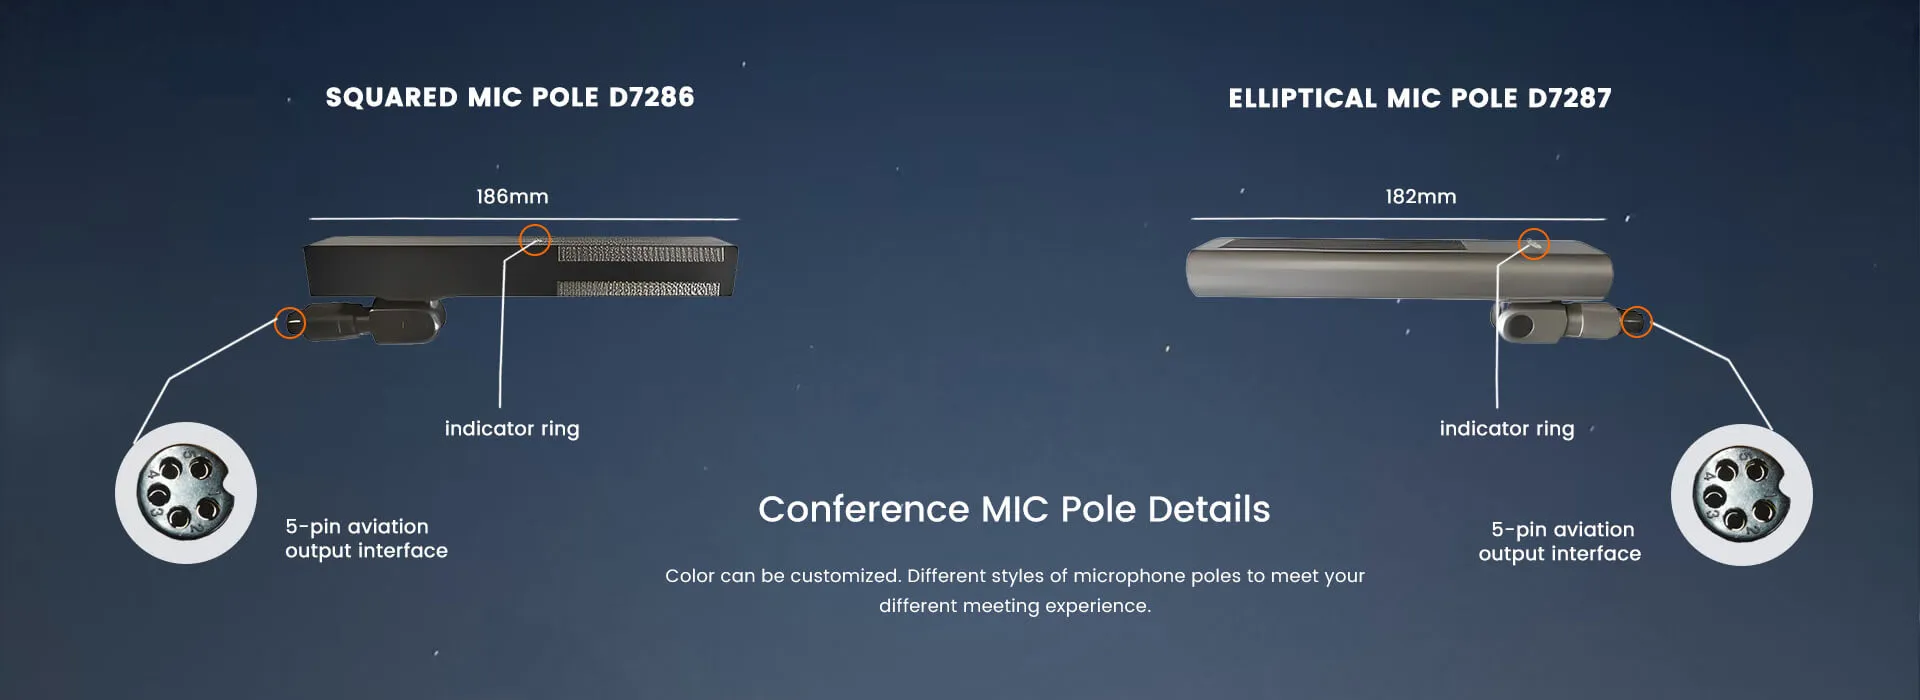 Conferencia Elíptica Mic Pole